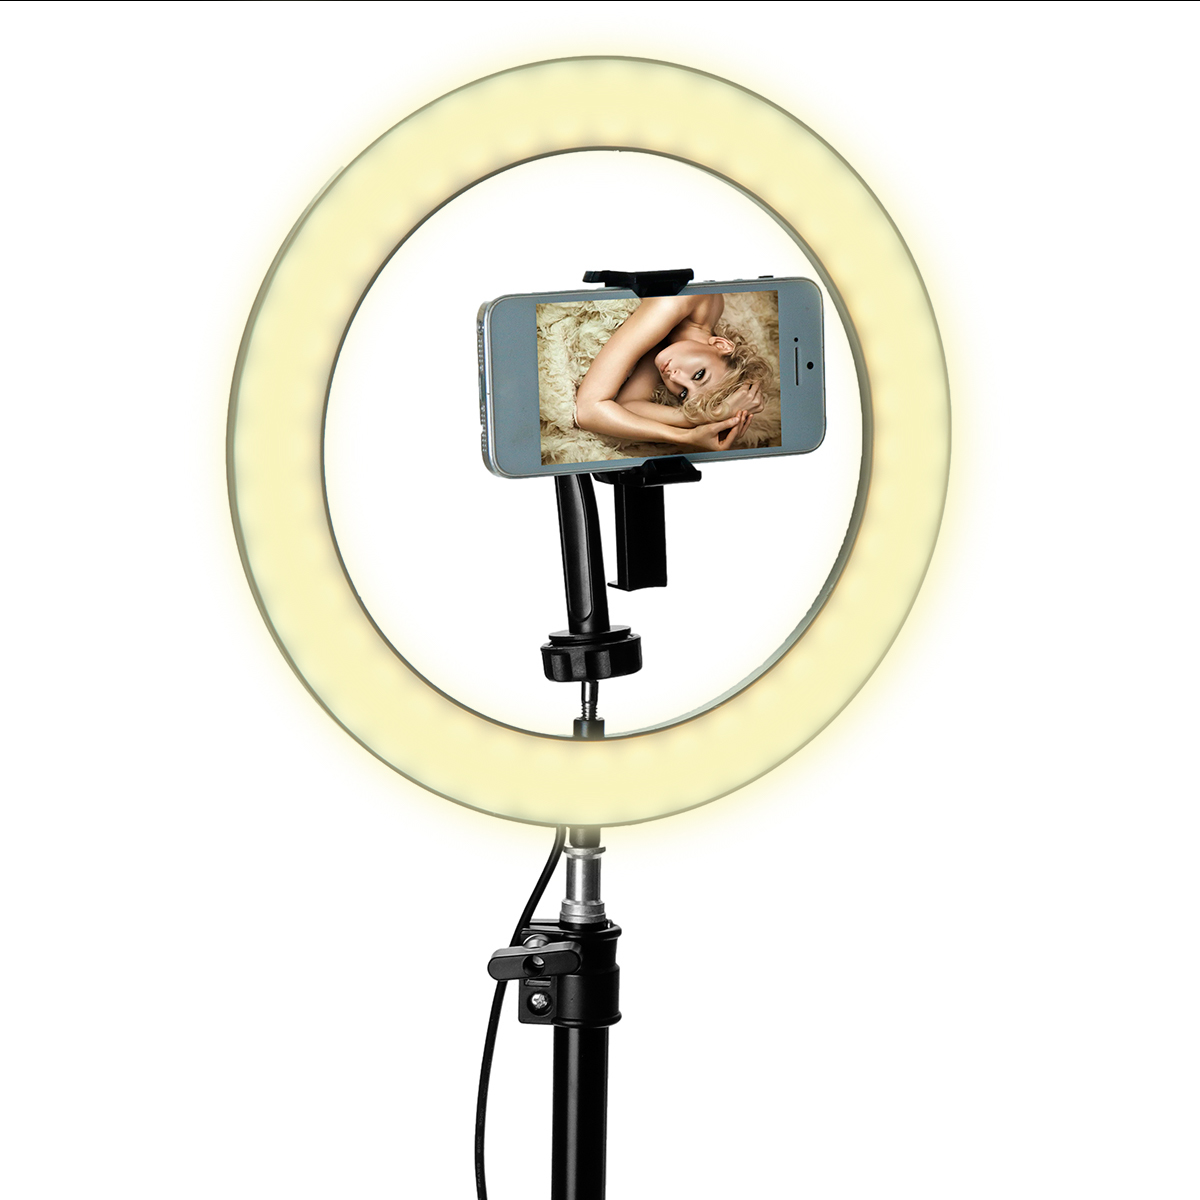 Portable-LED-Ring-Light-Tripod-Stand-Live-Selfie-Holder-USB-Plug-10-Inch-Fill-Light-for-YouTube-Tikt-1431335-7